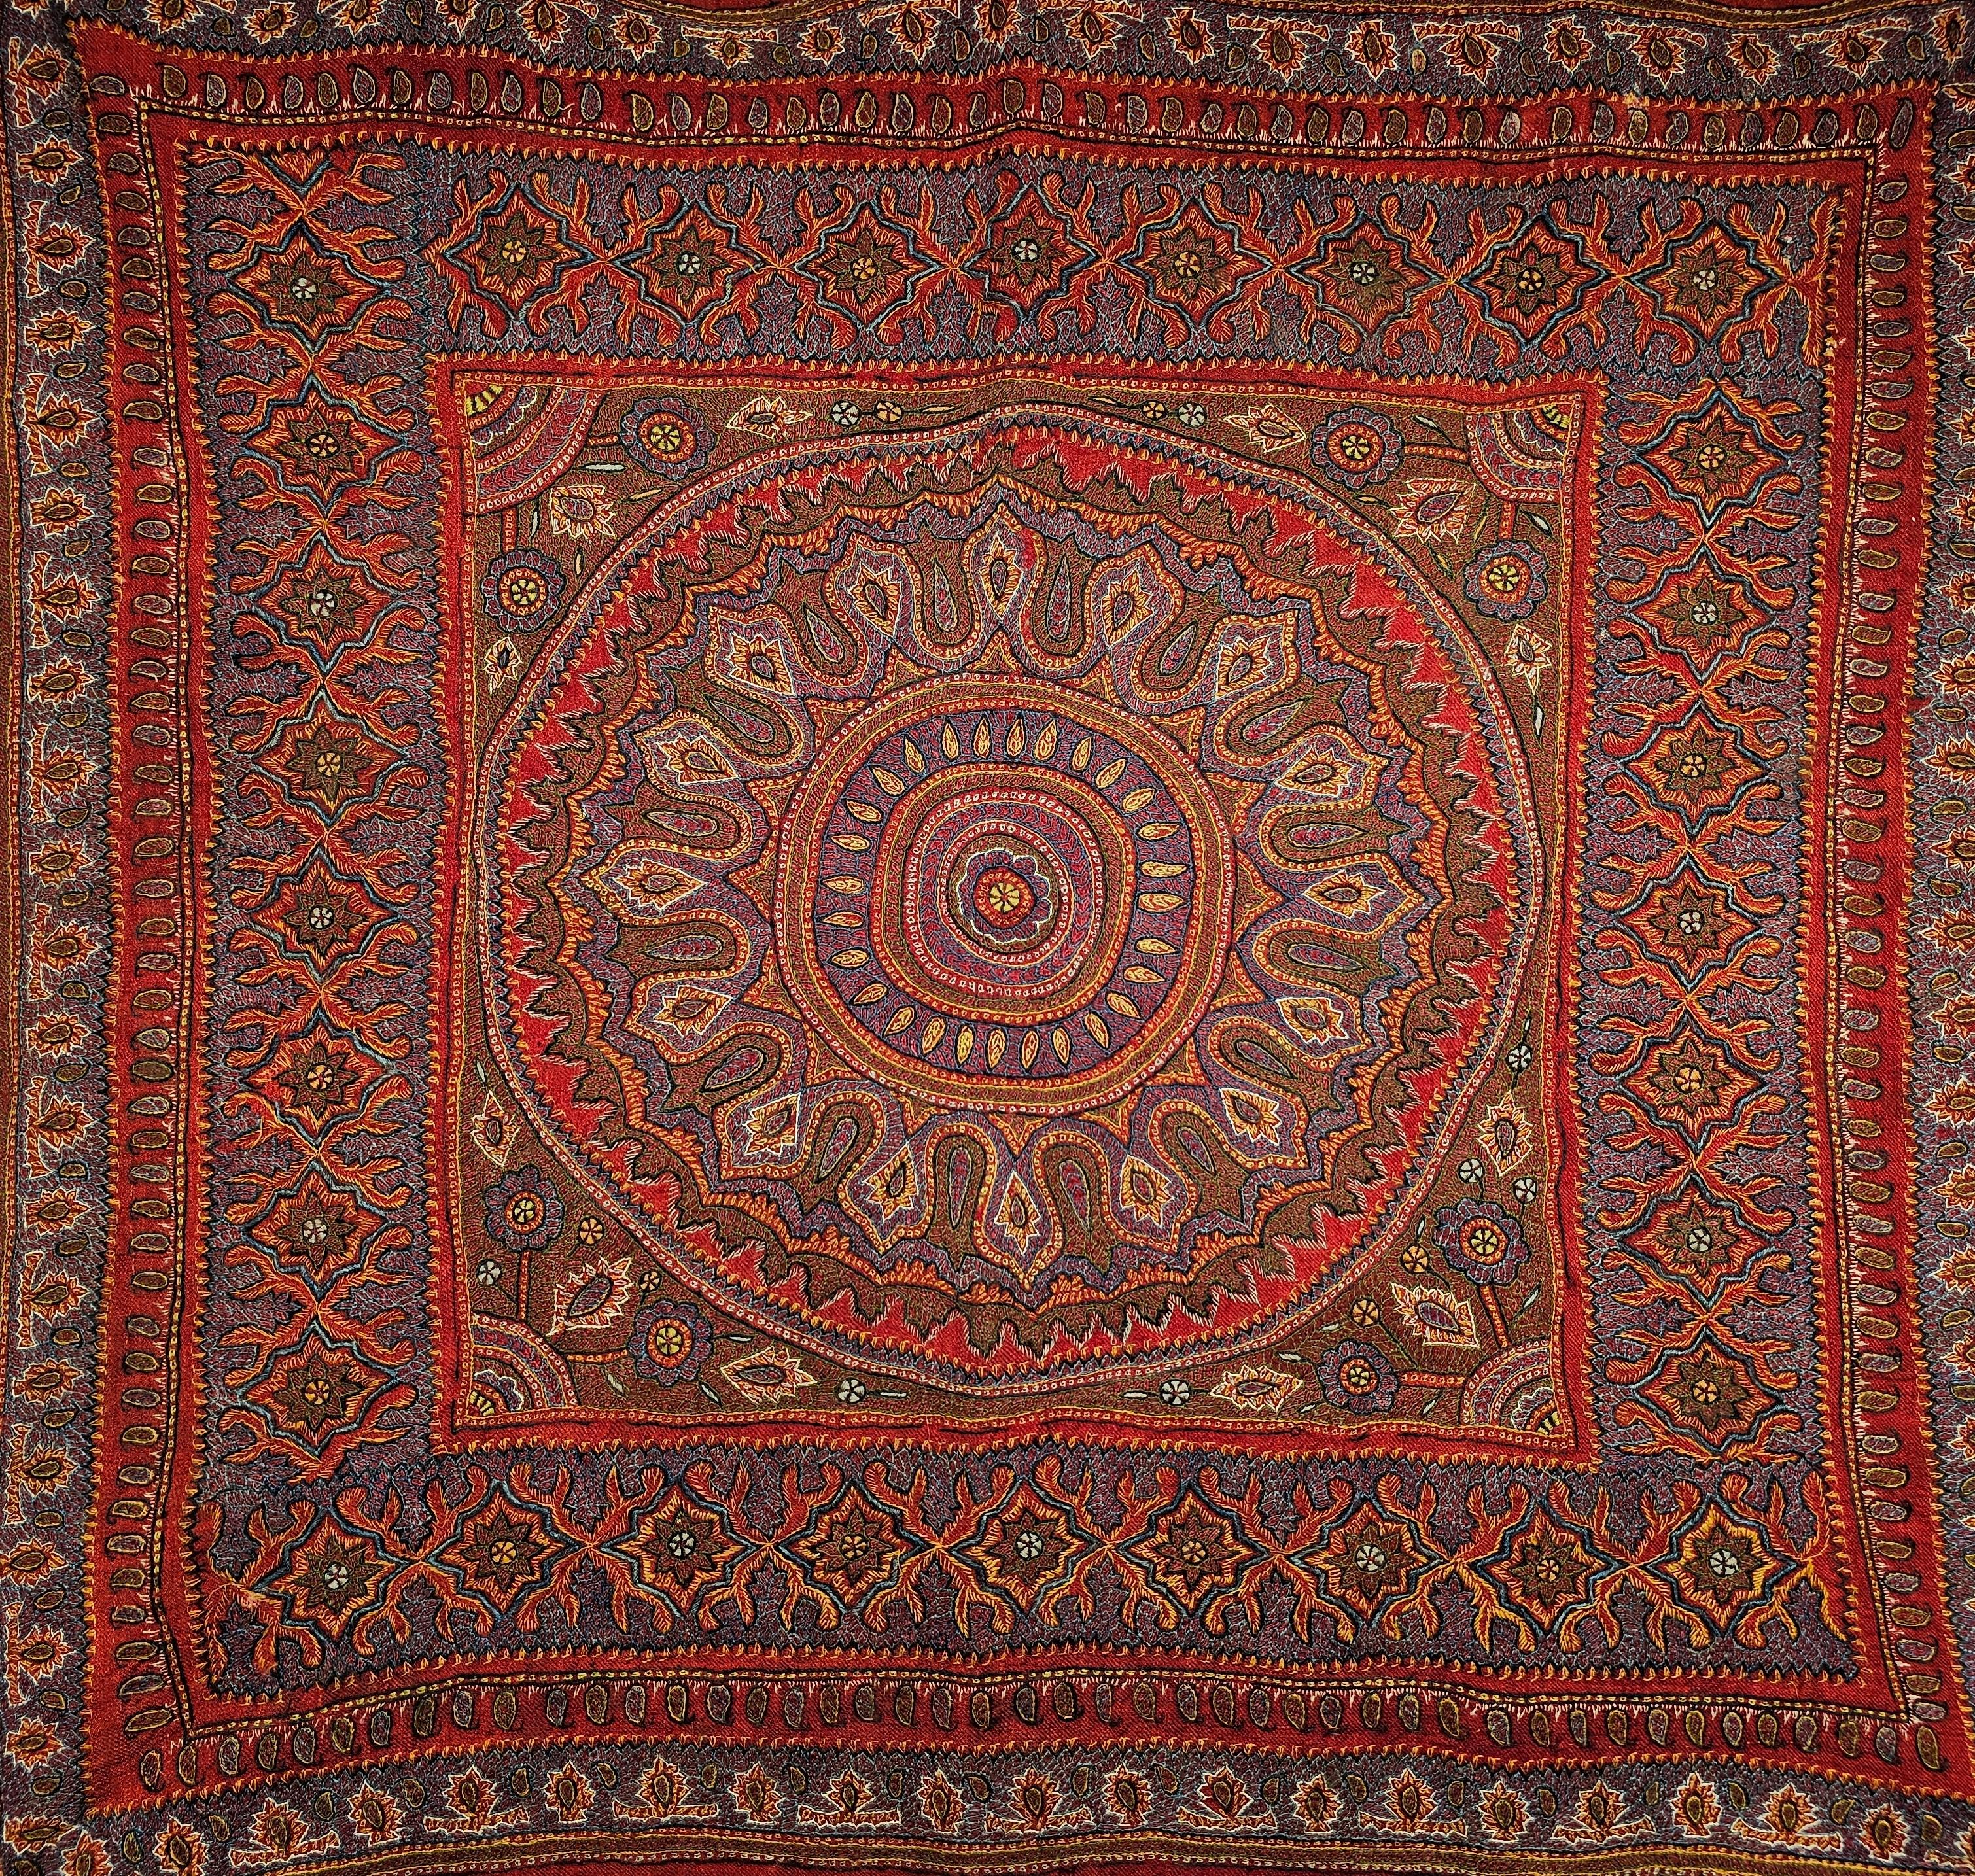 La broderie Kerman Suzani (Termeh en persan) est originaire de l'ancienne ville de Kerman en Perse. La tapisserie textile brodée à la main est sur un fond de tissu rouge avec des motifs de broderie en bleu, violet, jaune et marron. La pièce en